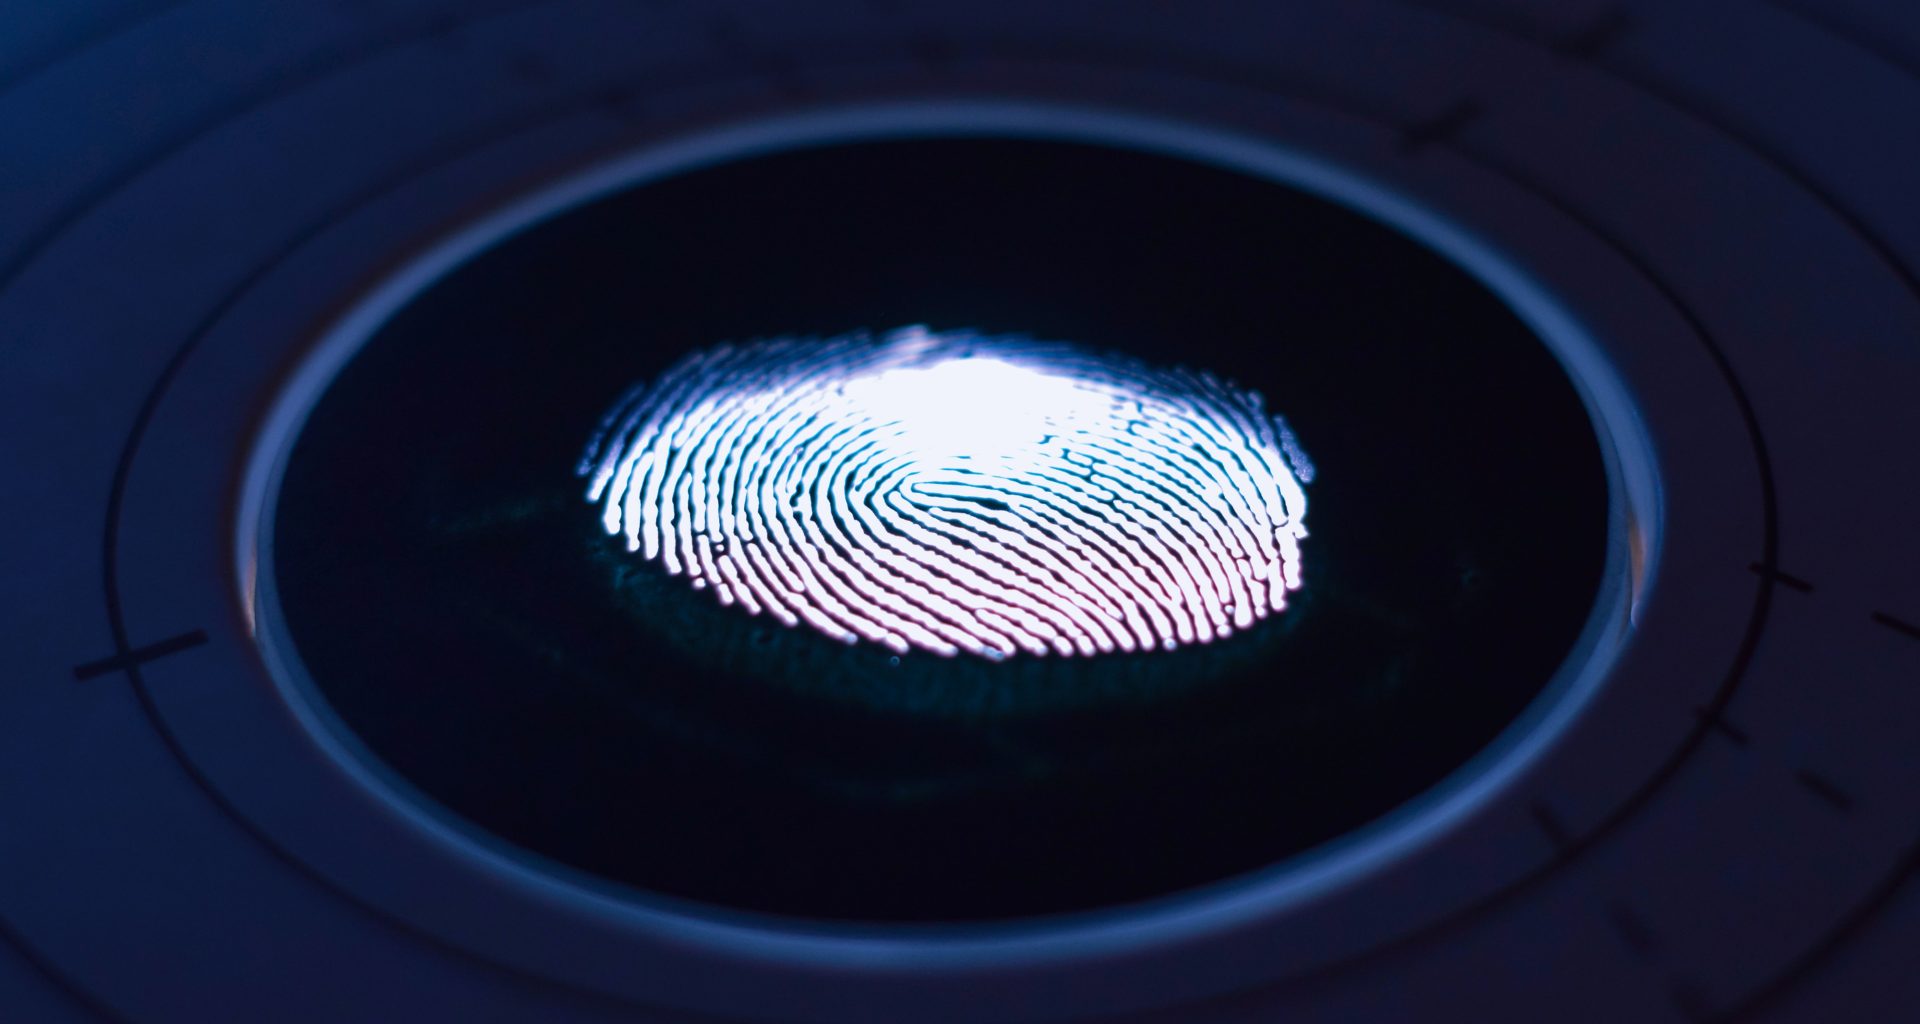 Image of a fingerprint scan